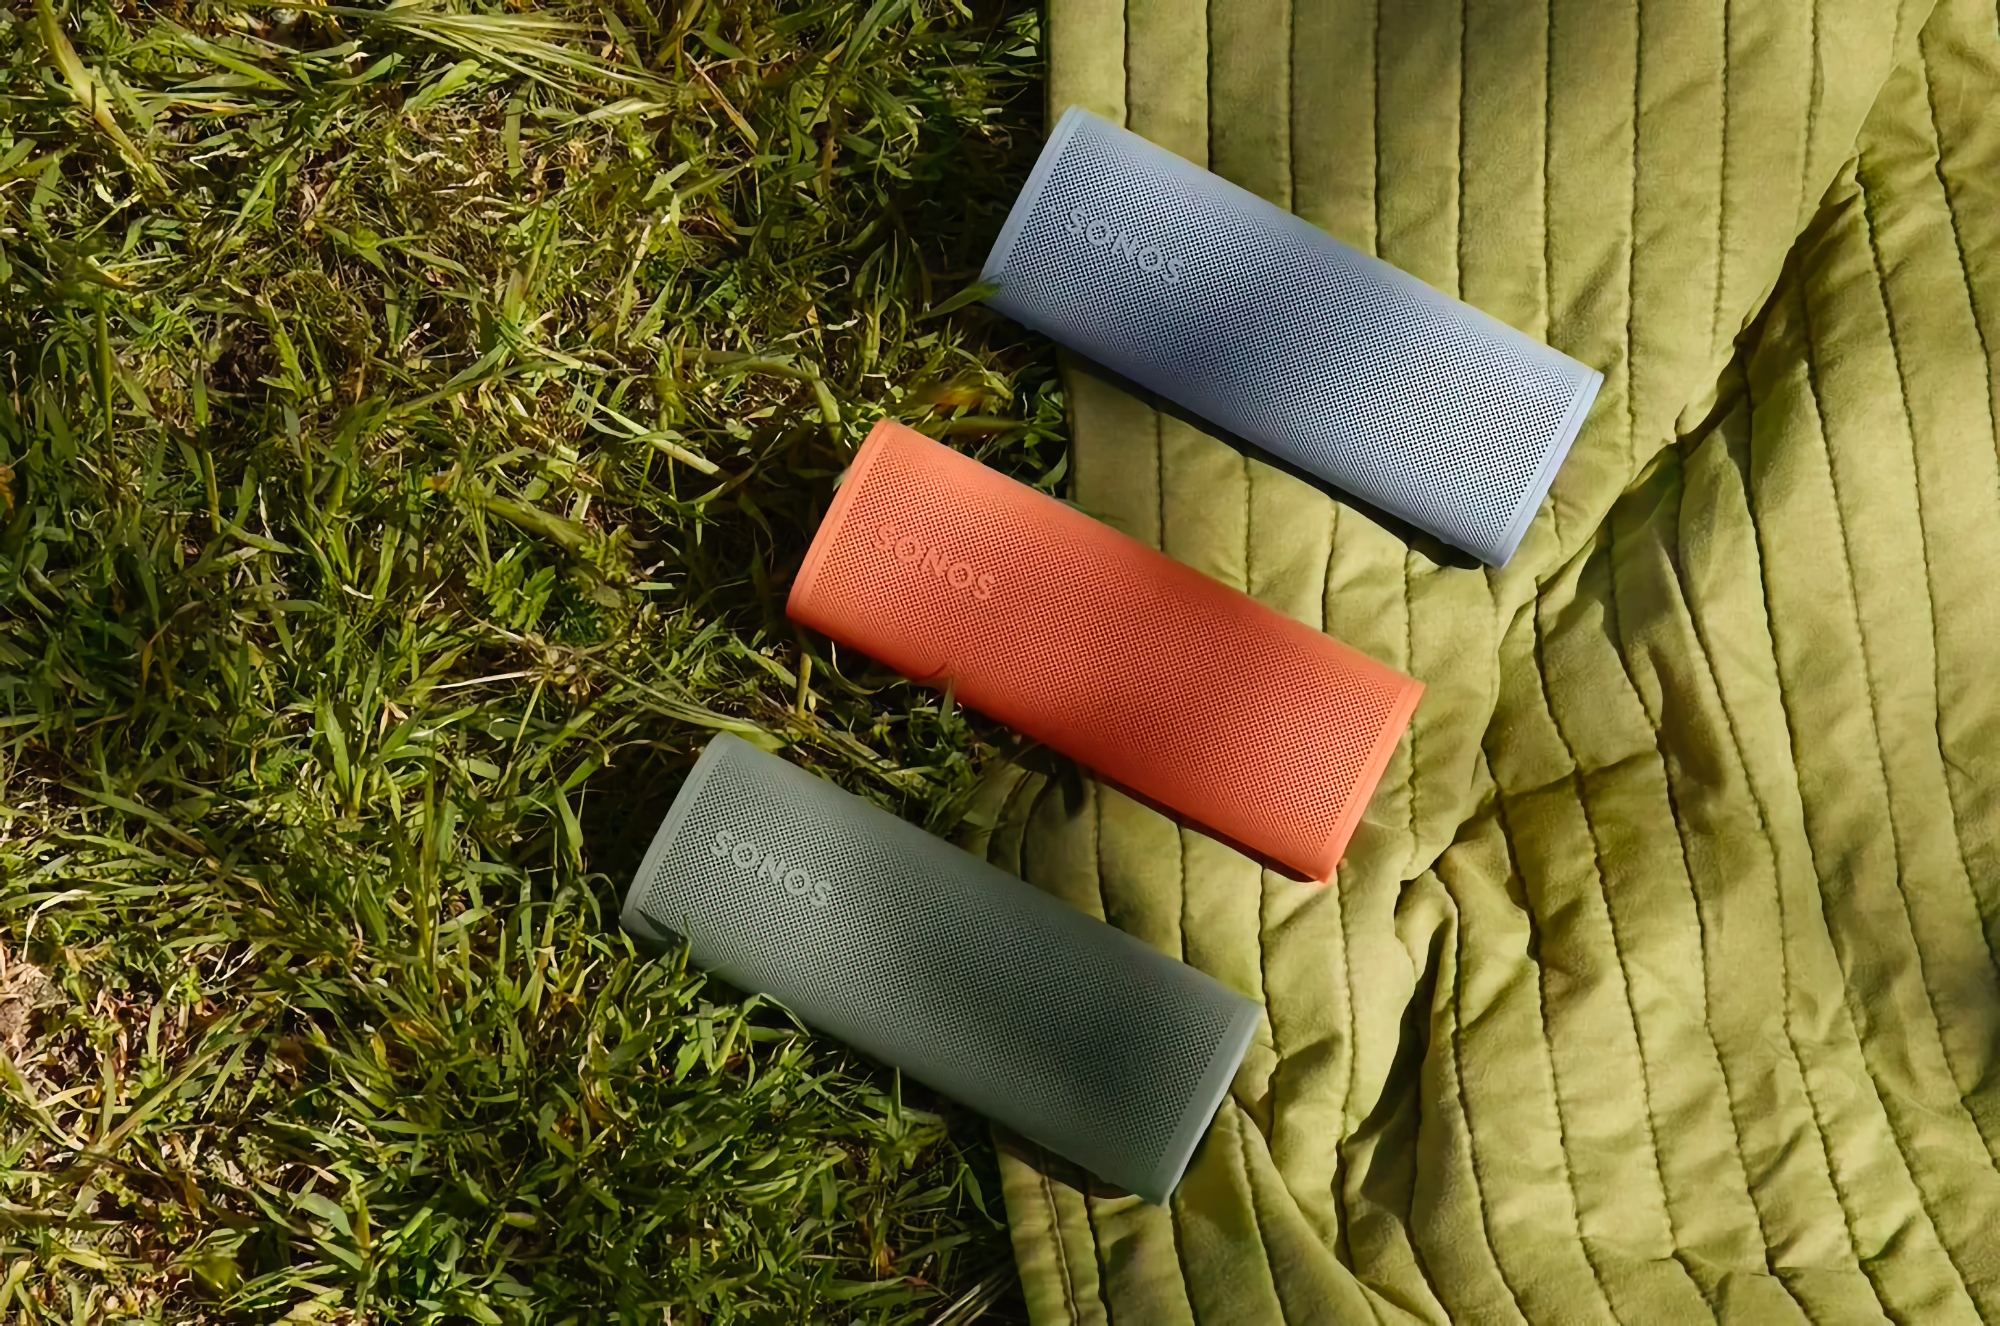 Sonos har præsenteret den kompakte højttaler Roam 2 med op til 10 timers batteritid og en pris på $179